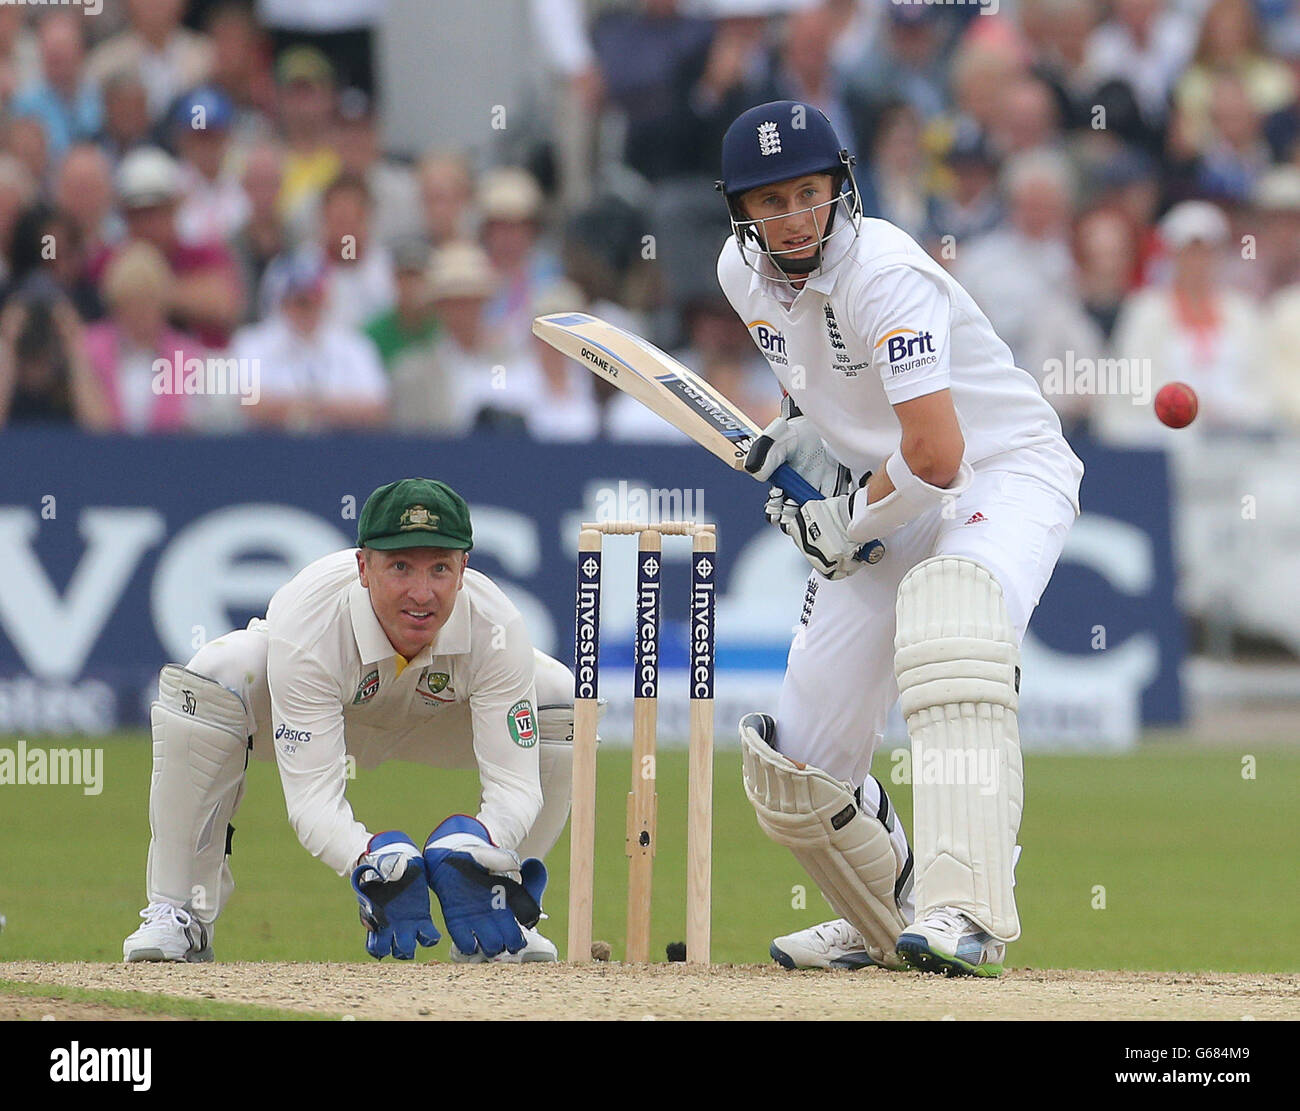 Der englische Batsman Joe Root wird am ersten Tag des ersten Investec Ashes Test-Spiels in Trent Bridge, Nottingham, von Australiens Wicketkeeper Brad Haddin beobachtet. Stockfoto